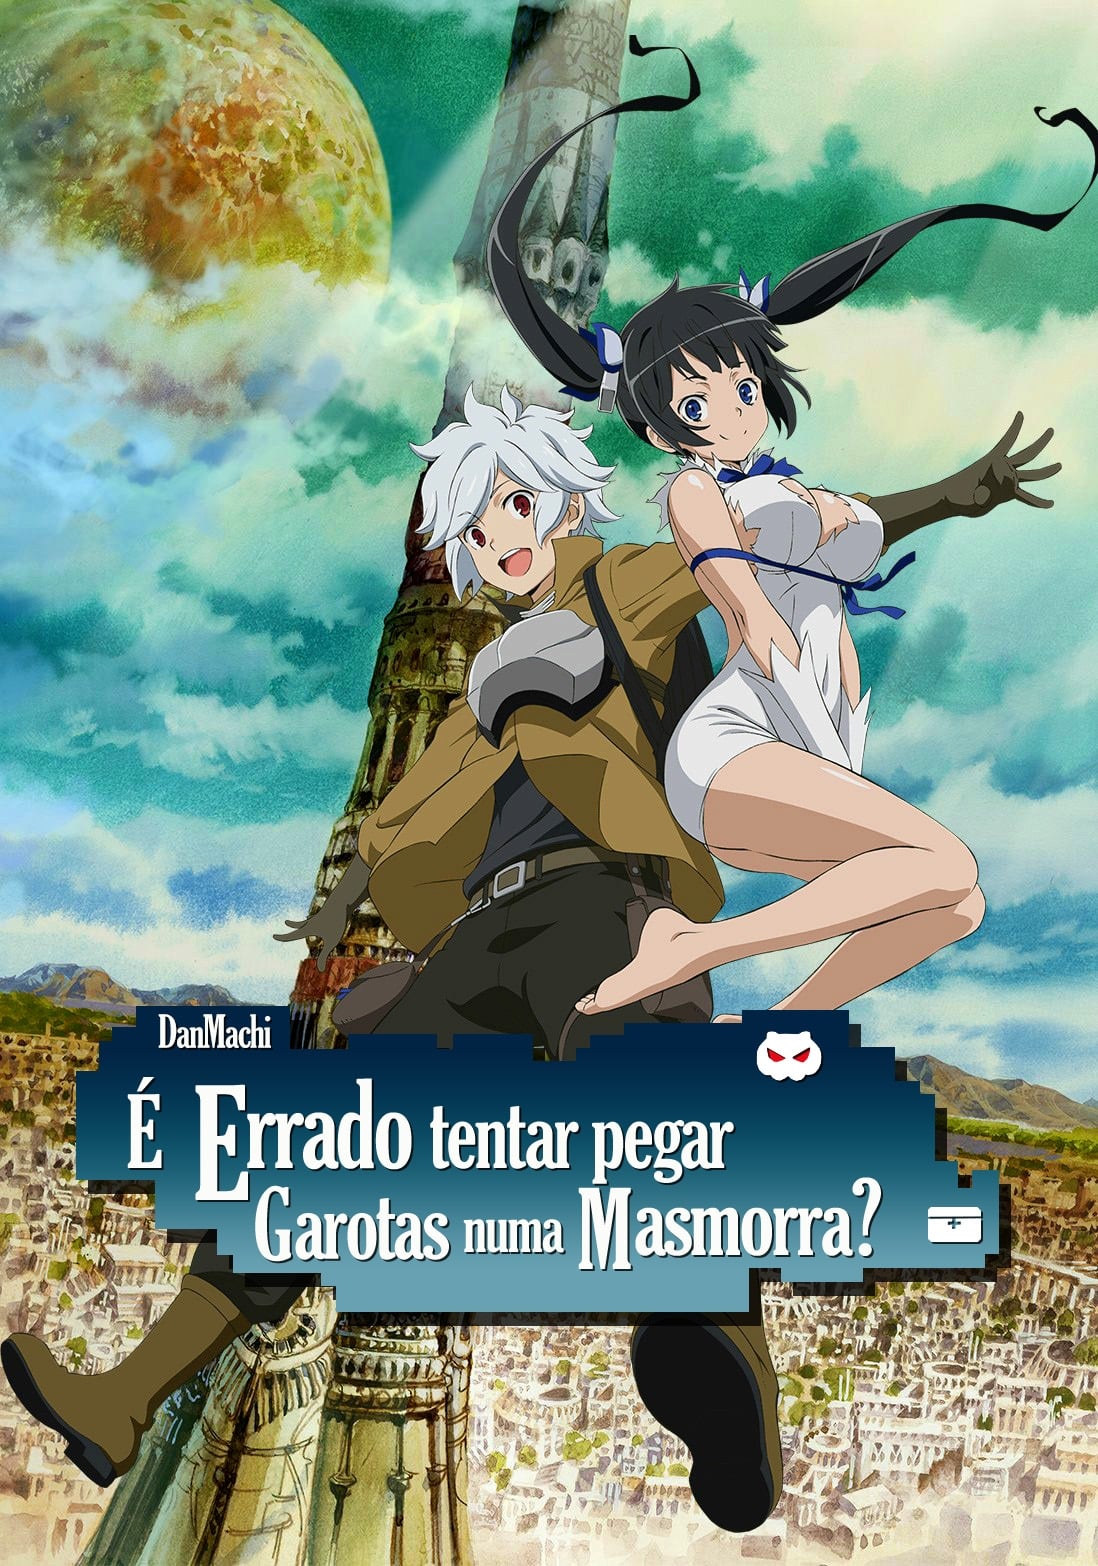 Como Assistir DANMACHI DUBLADO e legendado em português Anime EP 1